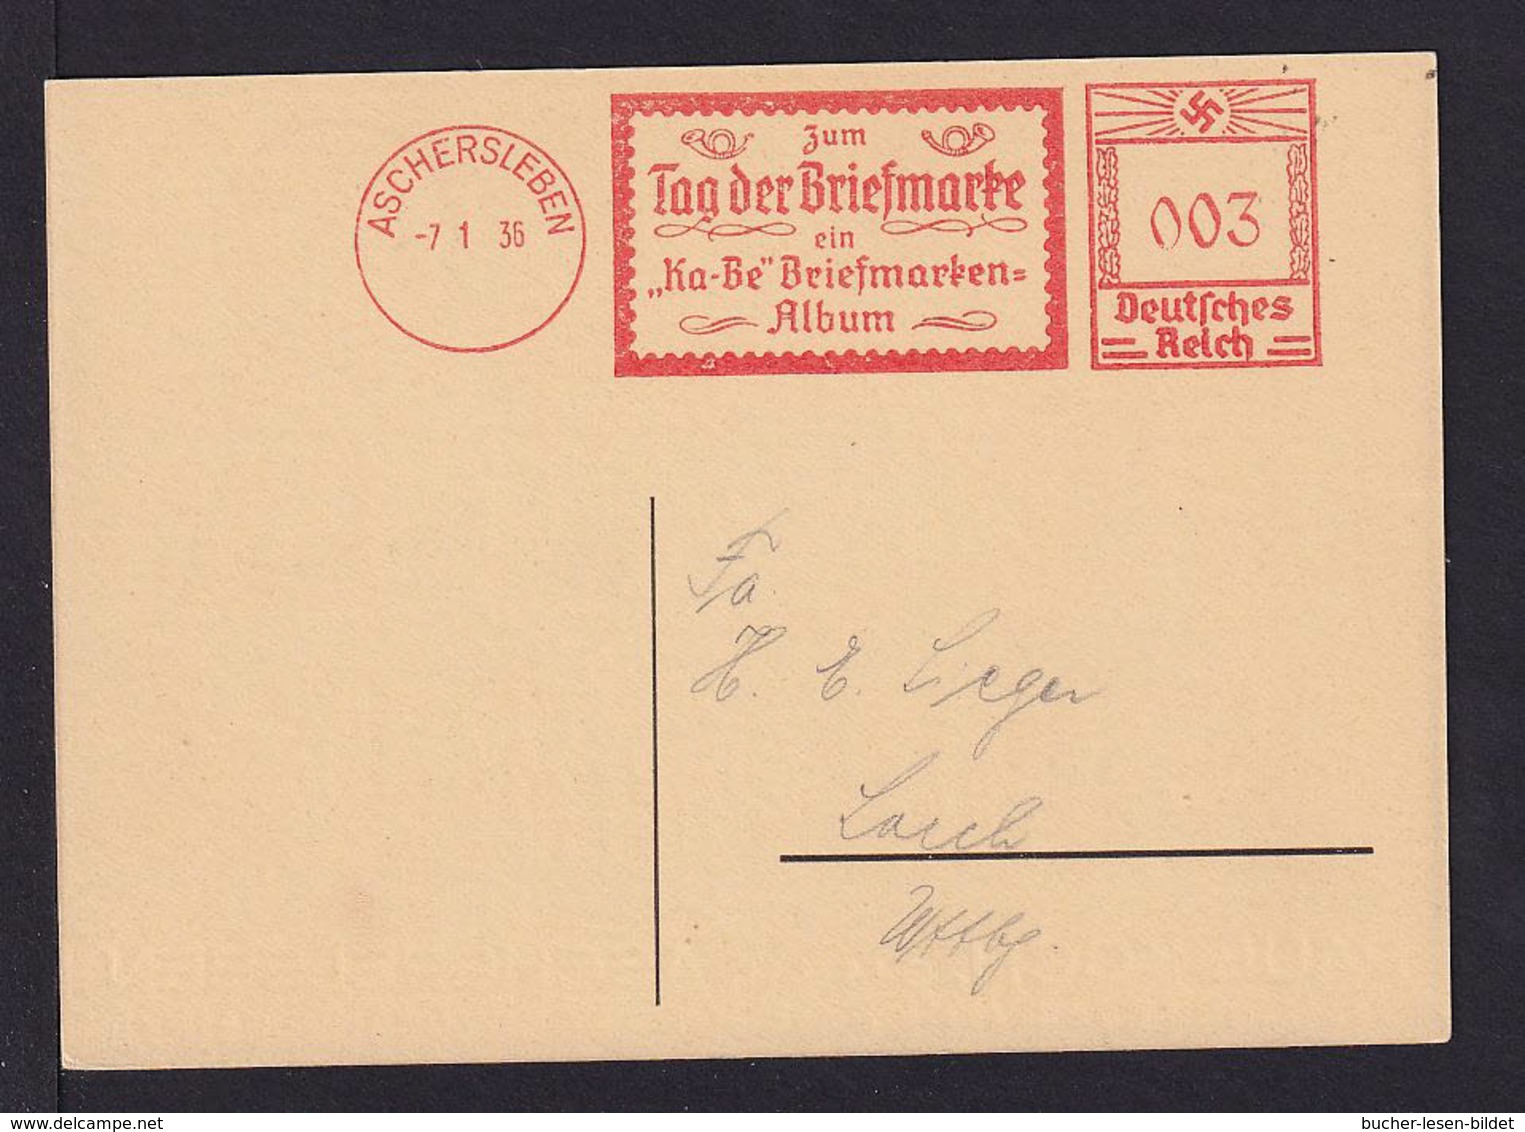 1936 - Freistempel Aschersleben "Zum Tag Der Briefmarke.. Album" - Passende Karte - Journée Du Timbre